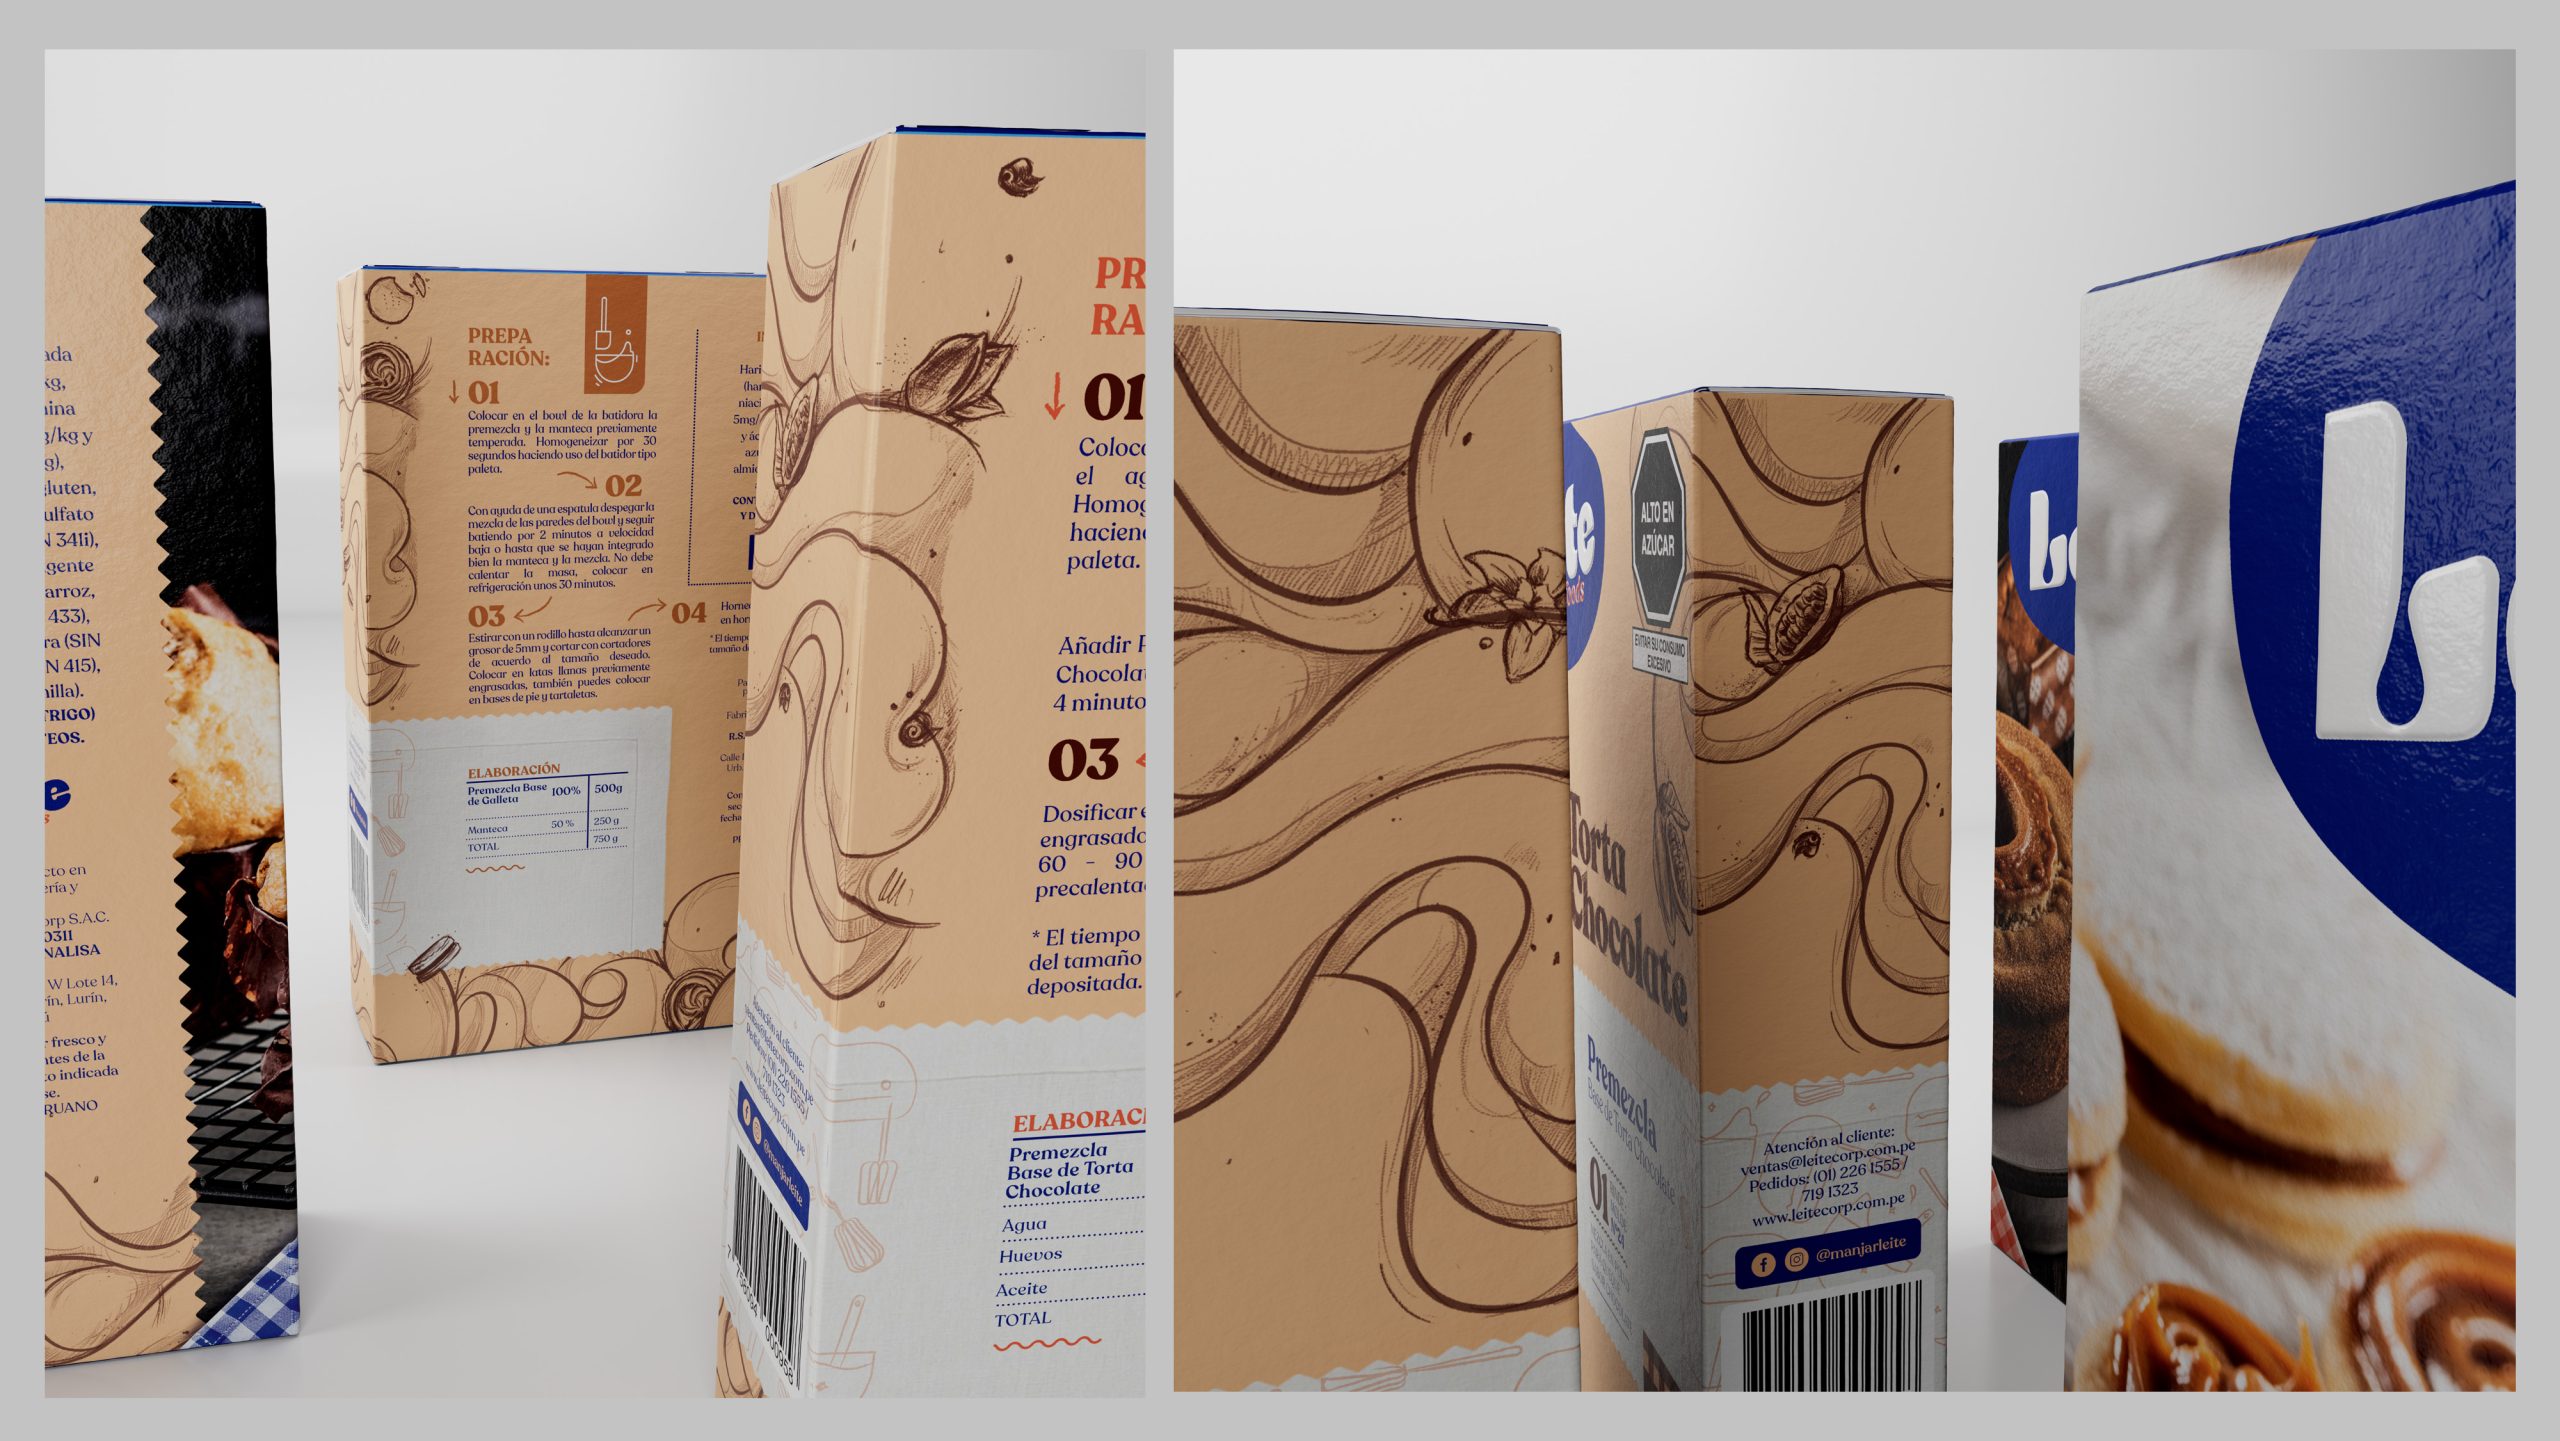 Premezclas Leite | Packaging